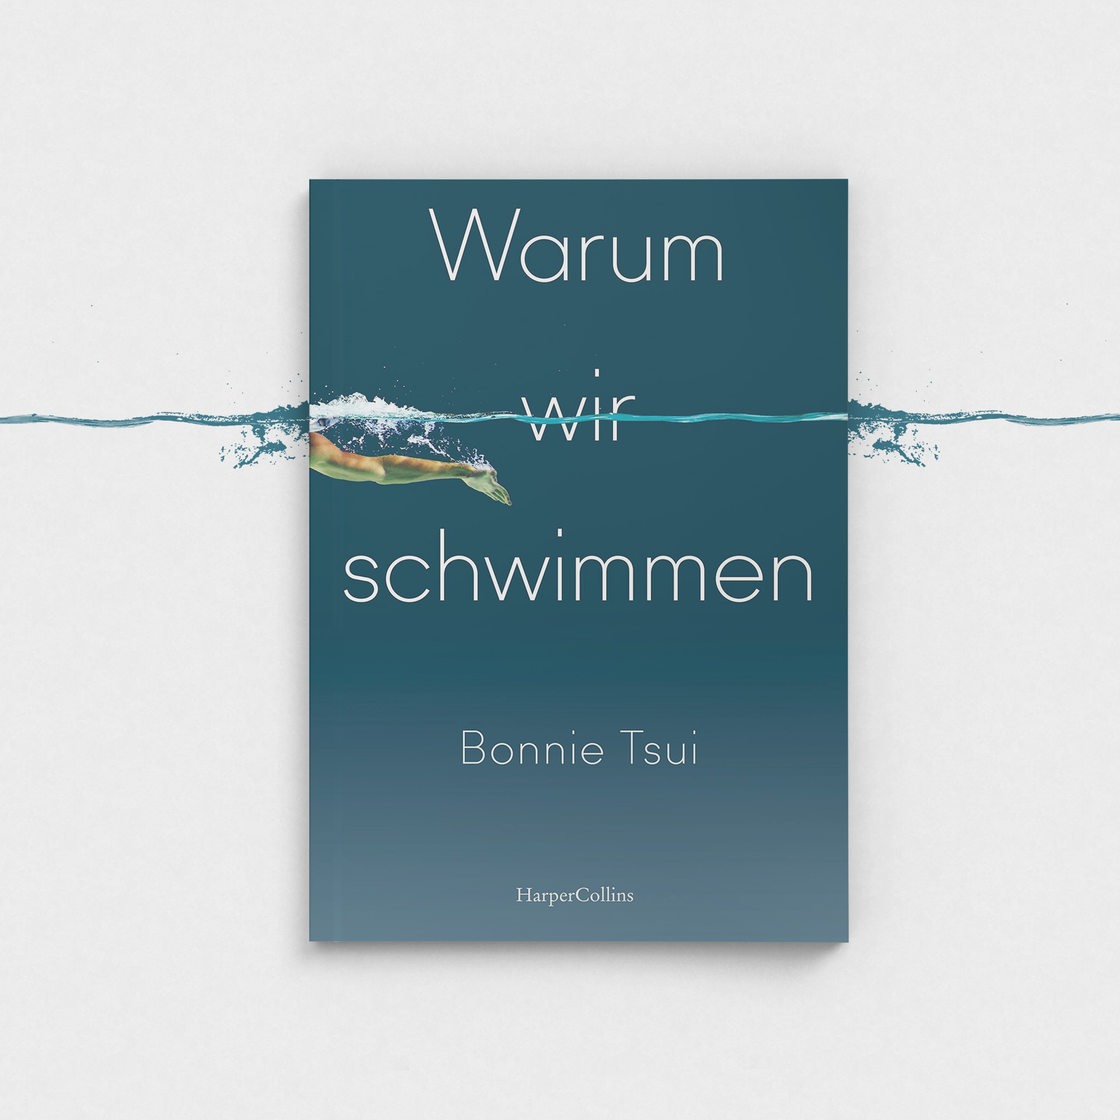 Buchcover Bonnie Tsui, "Warum wir schwimmen"